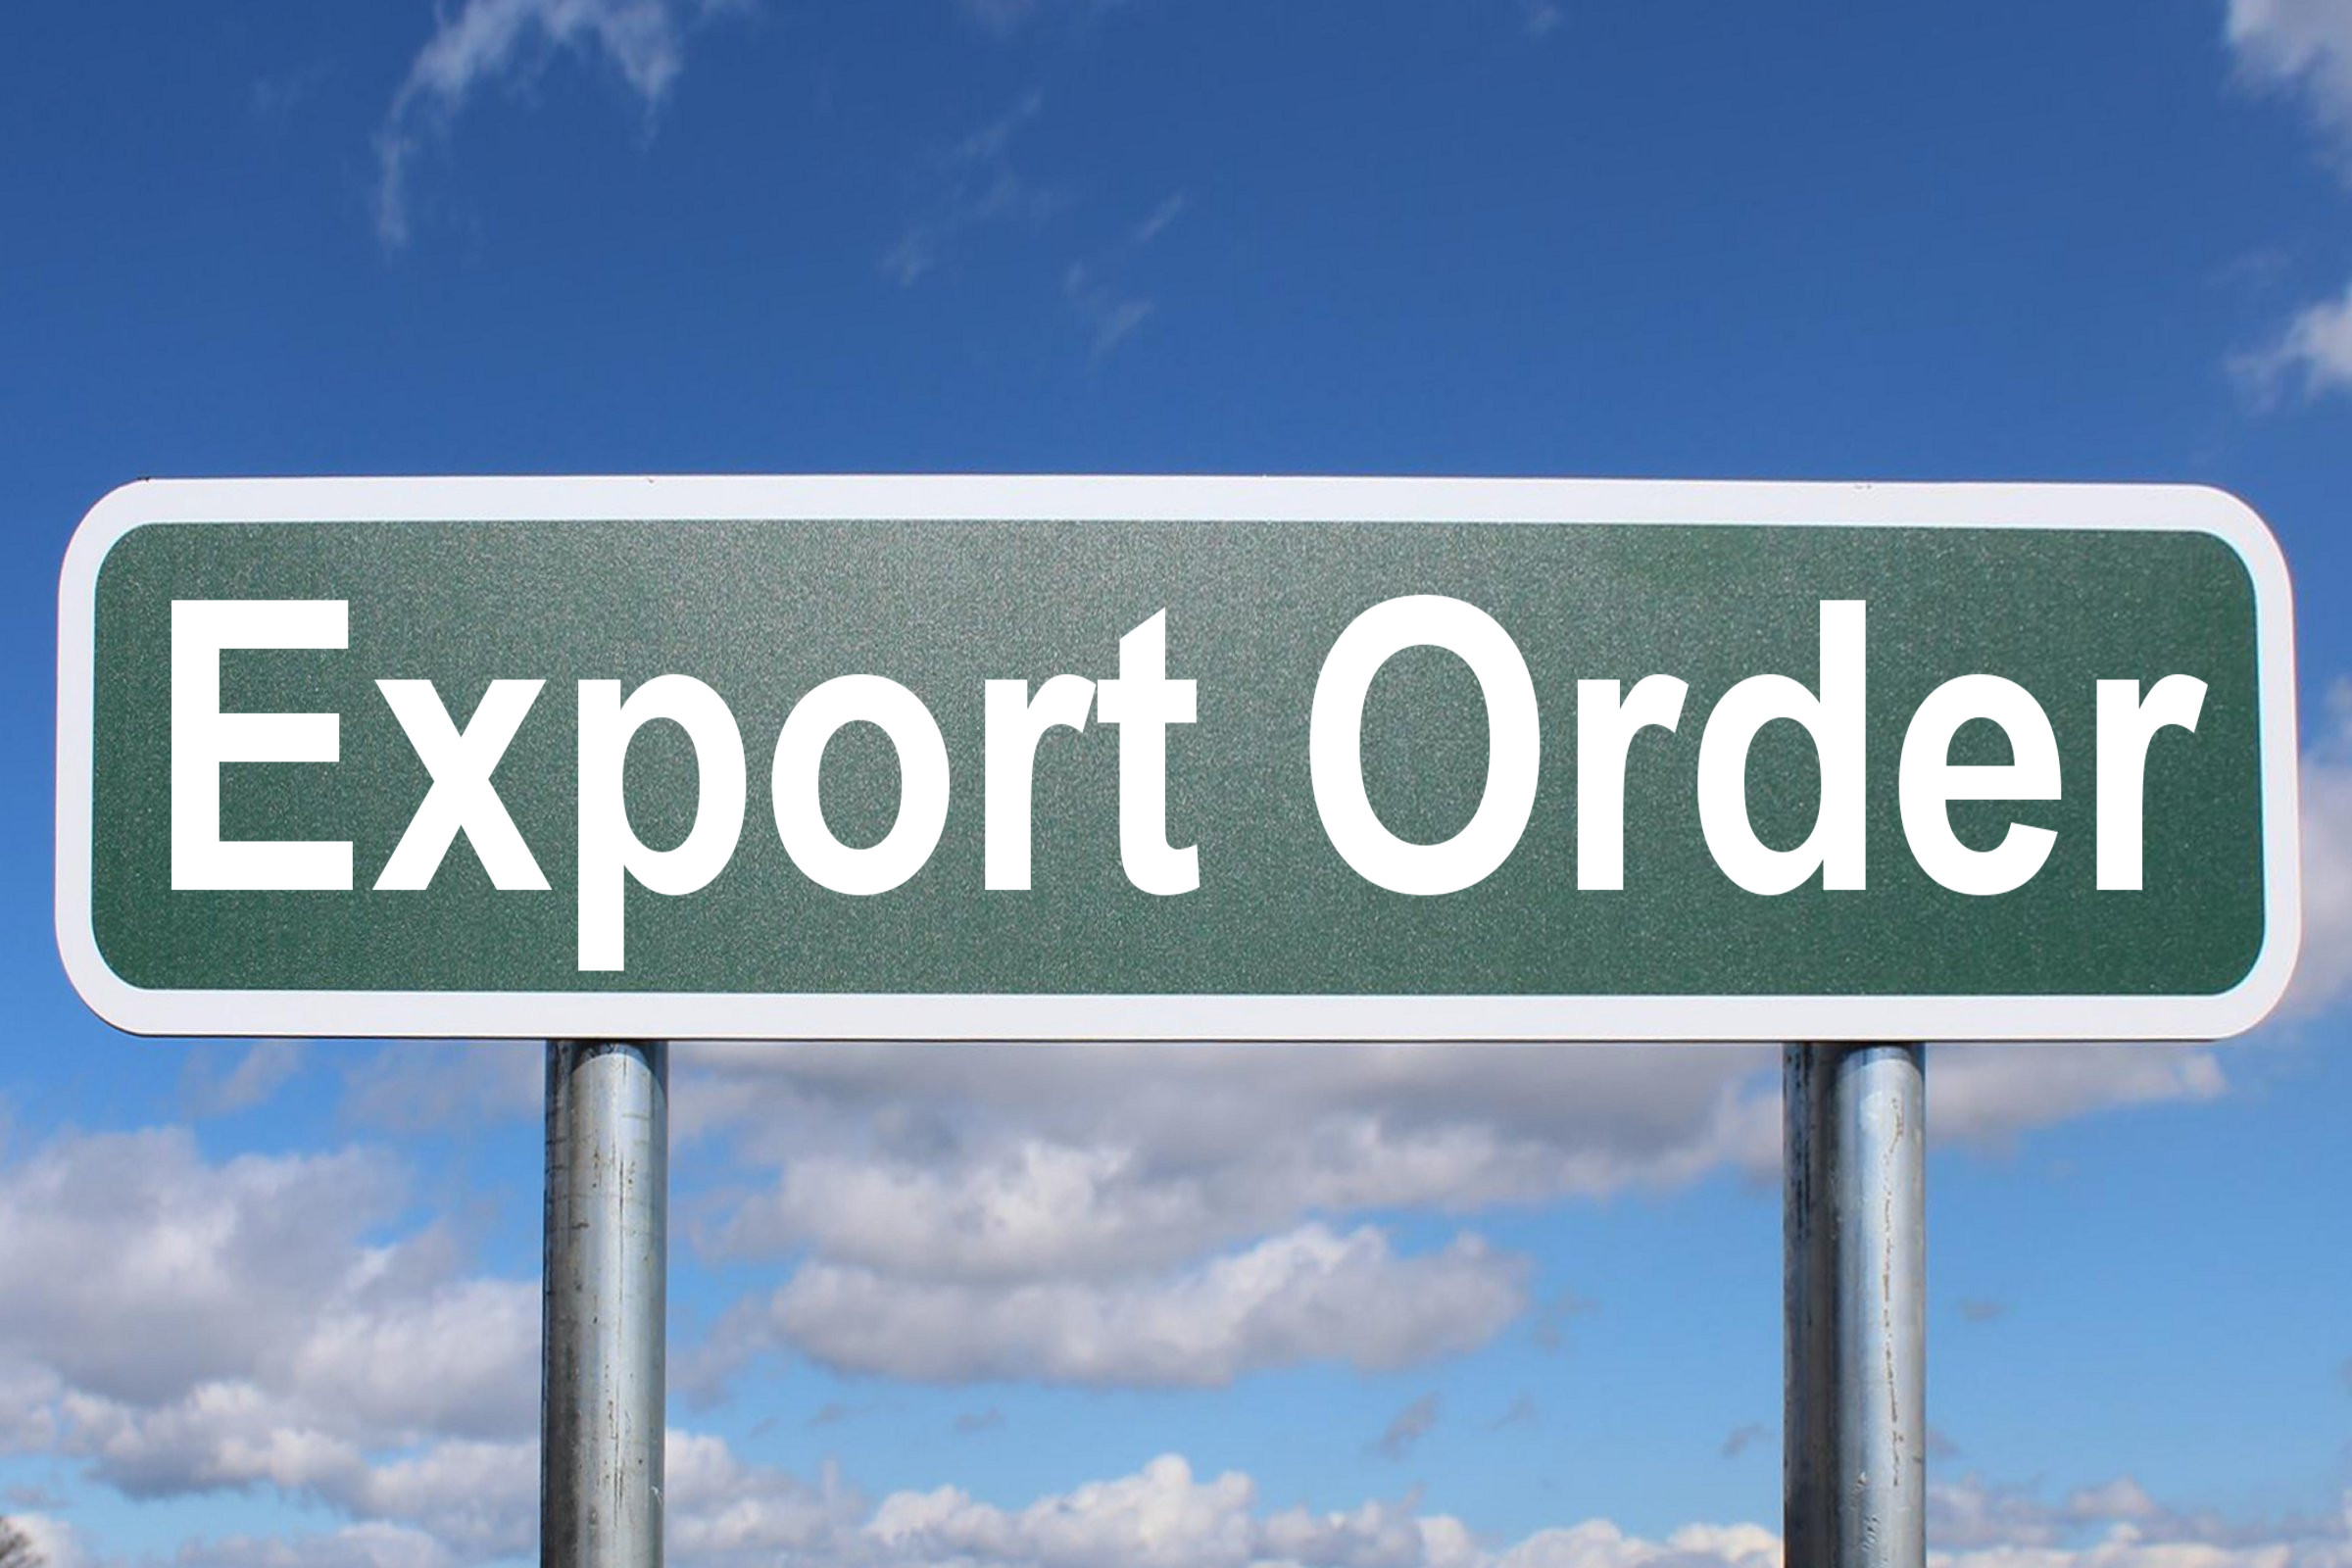 export order